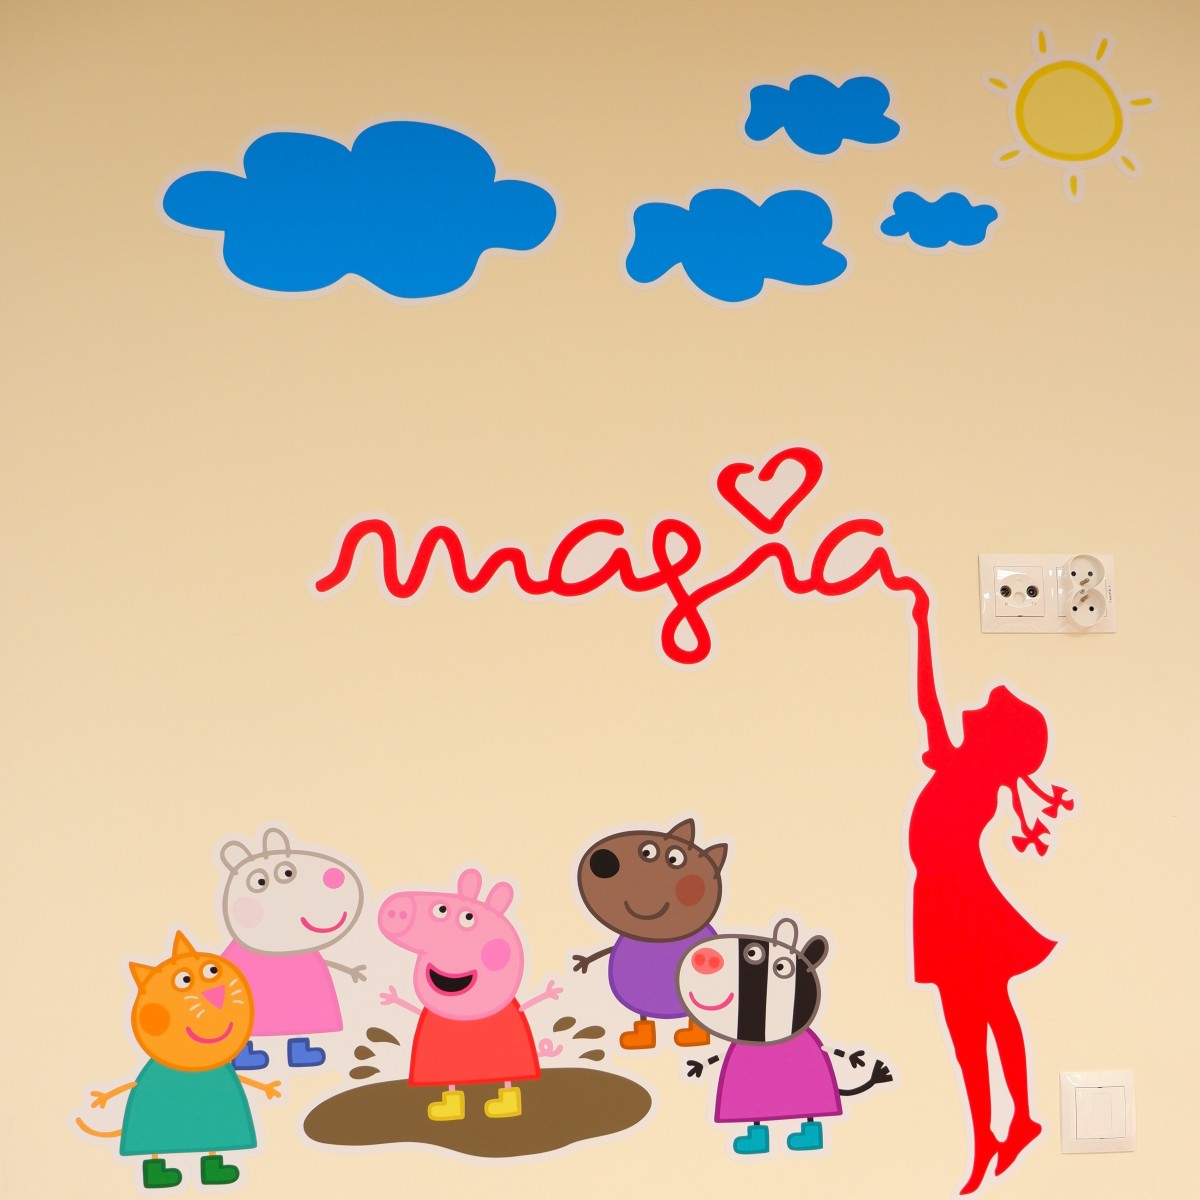 Fundacja „Magia” ozdabia Oddział Dziecięcy